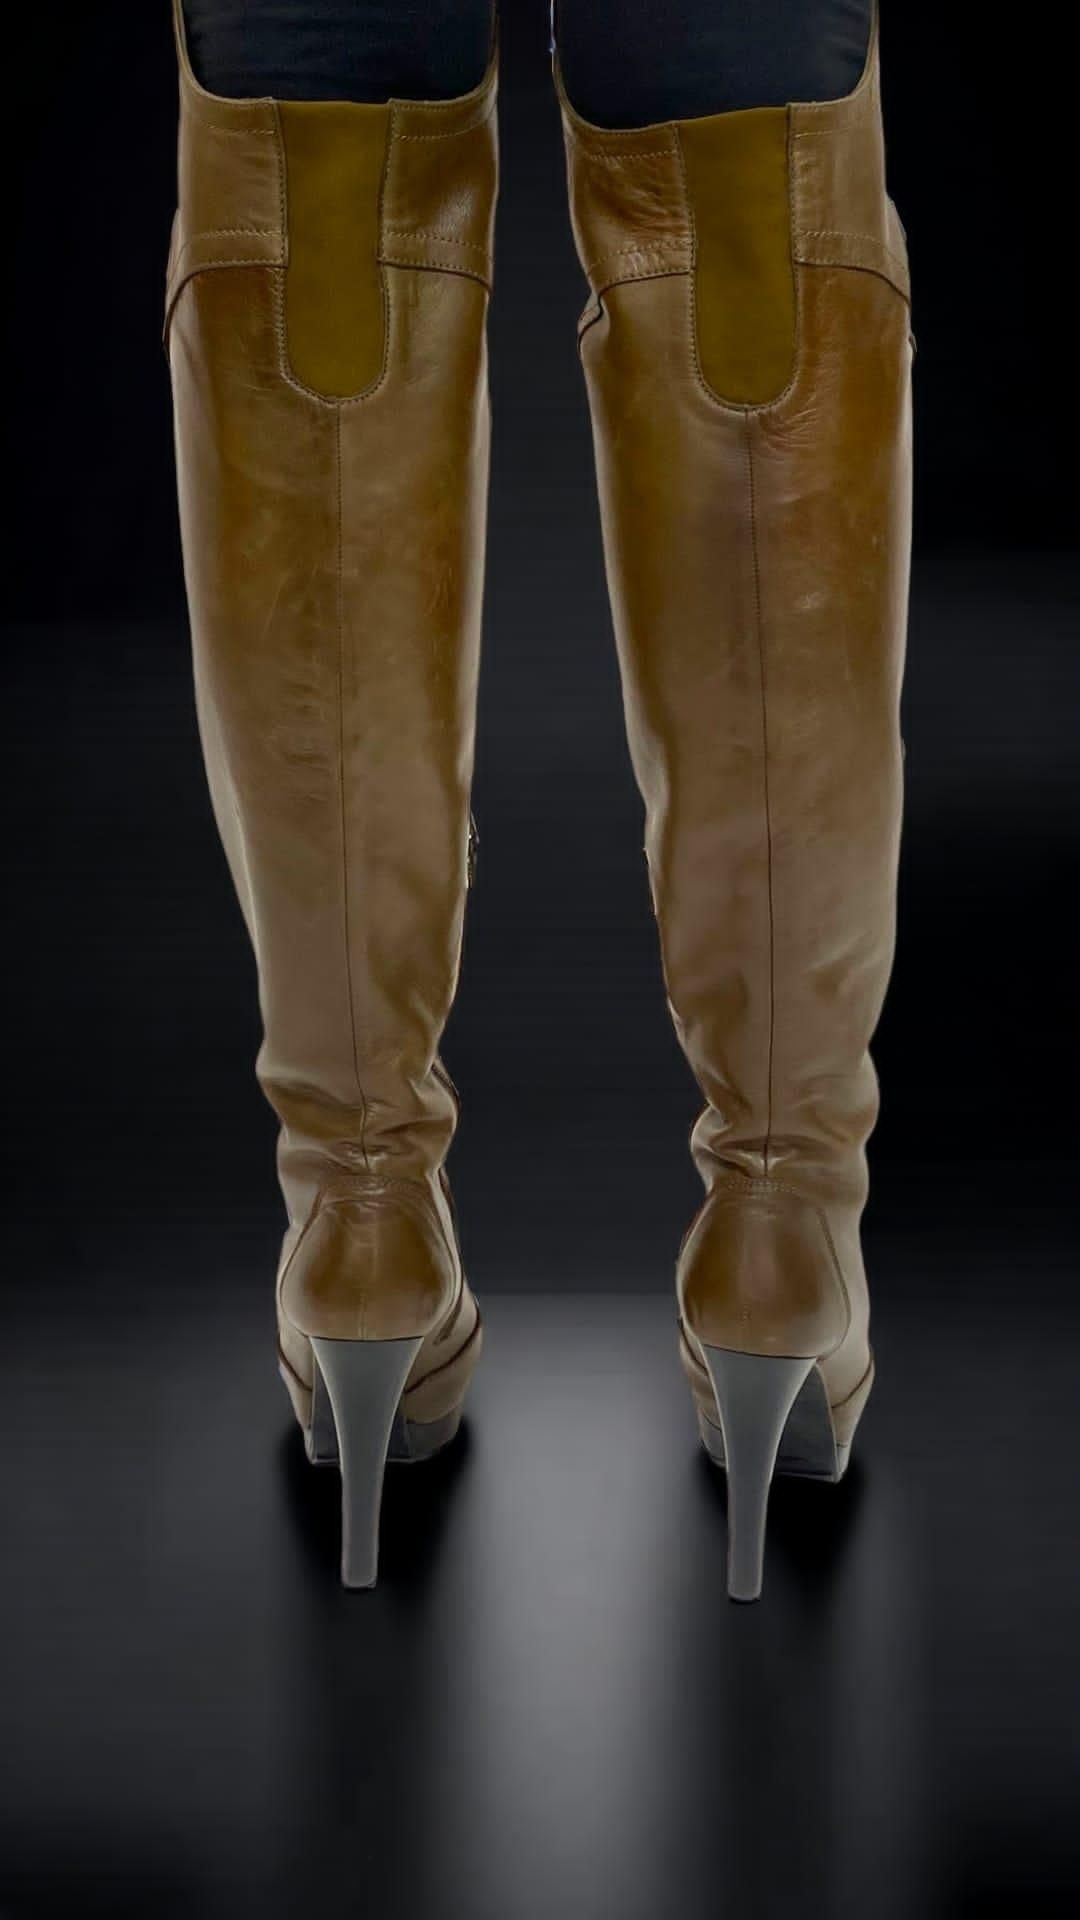 A Pair of Brown Stuart Weitzman Ultrastuart Over the Knee Boots, 2cm Platform, Heel height 12cm , US - Image 3 of 4